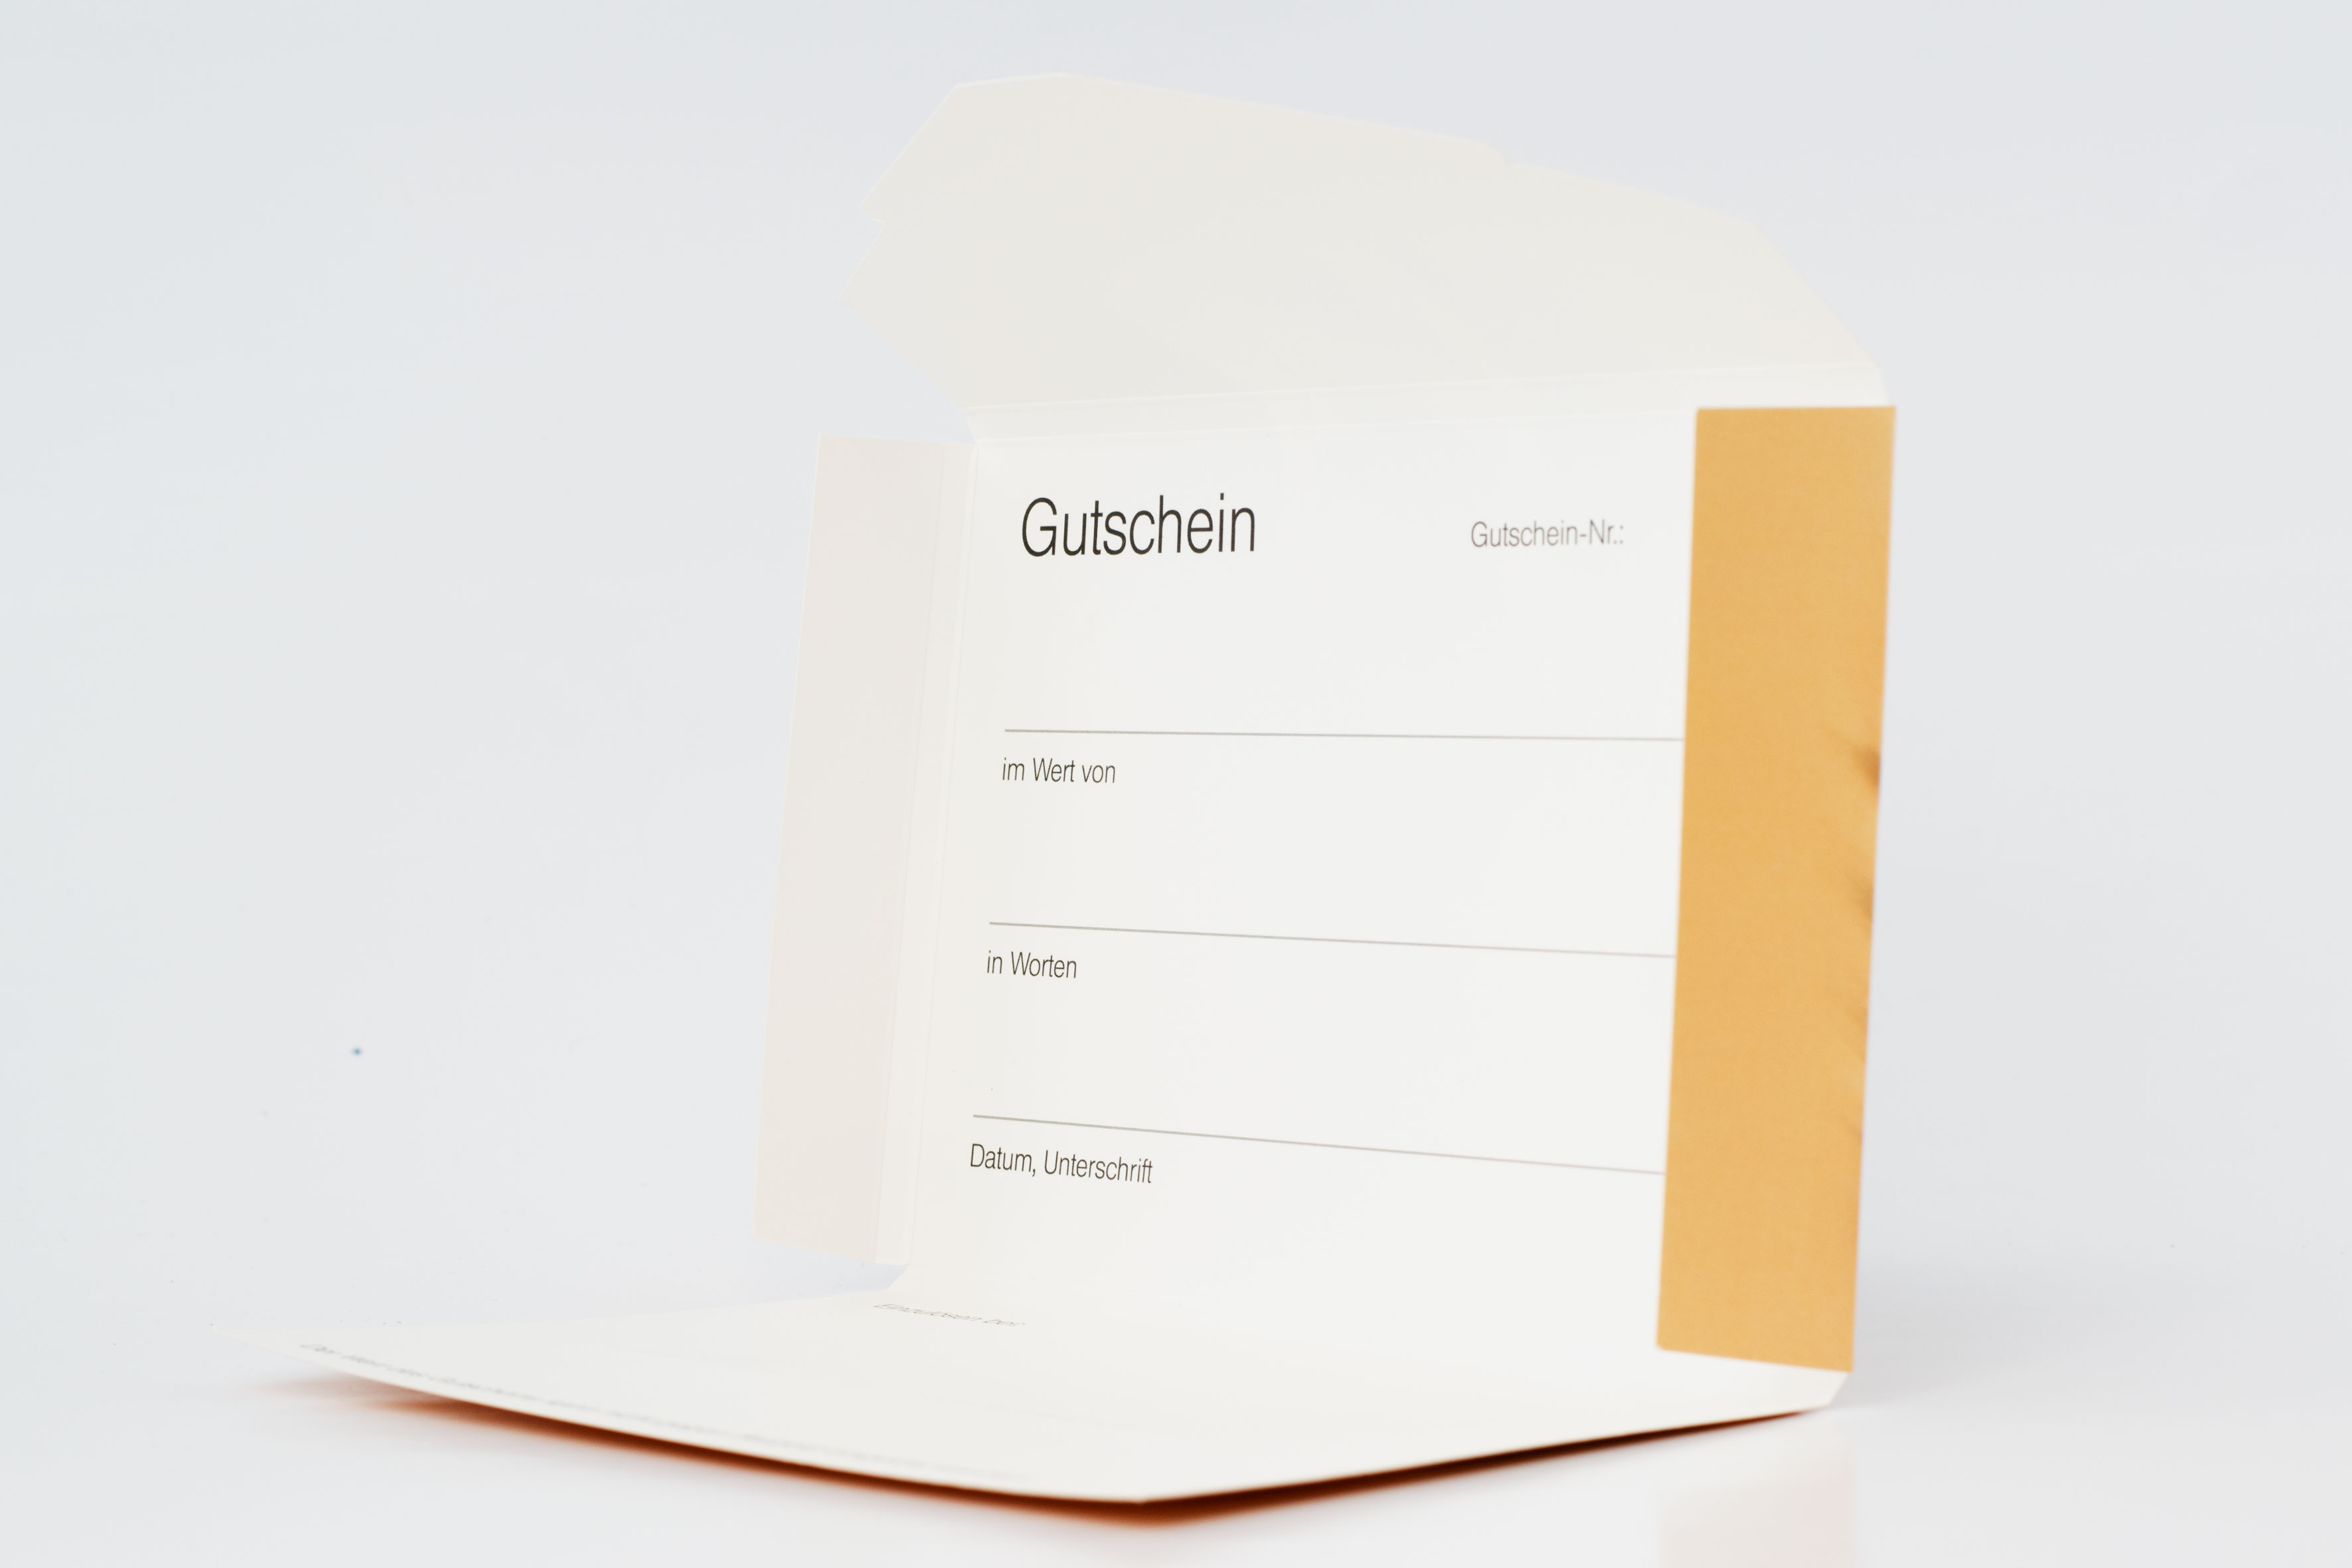 Gutschein-Faltbox "Gastronomie" Gutscheinkarte Geschenkbox Geschenkgutschein Restaurant